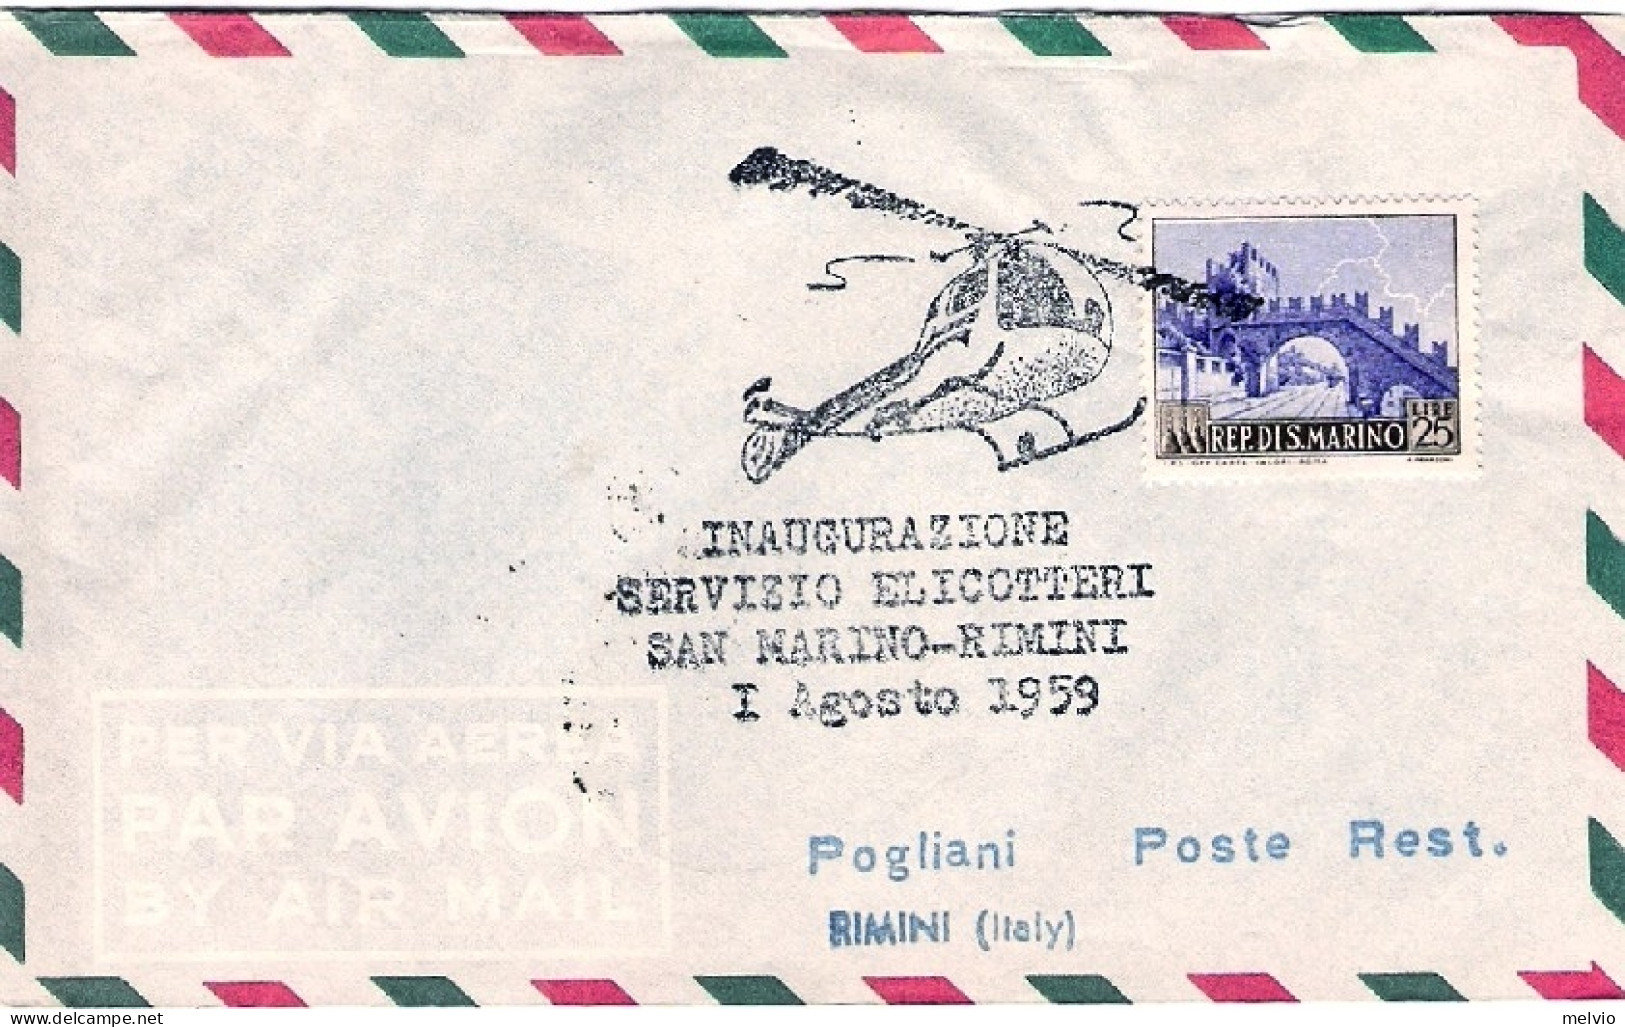 San Marino-1959 Bollo Inaugurazione Servizio Elicotteri San Marino-Rimini 1 Agos - Luftpost